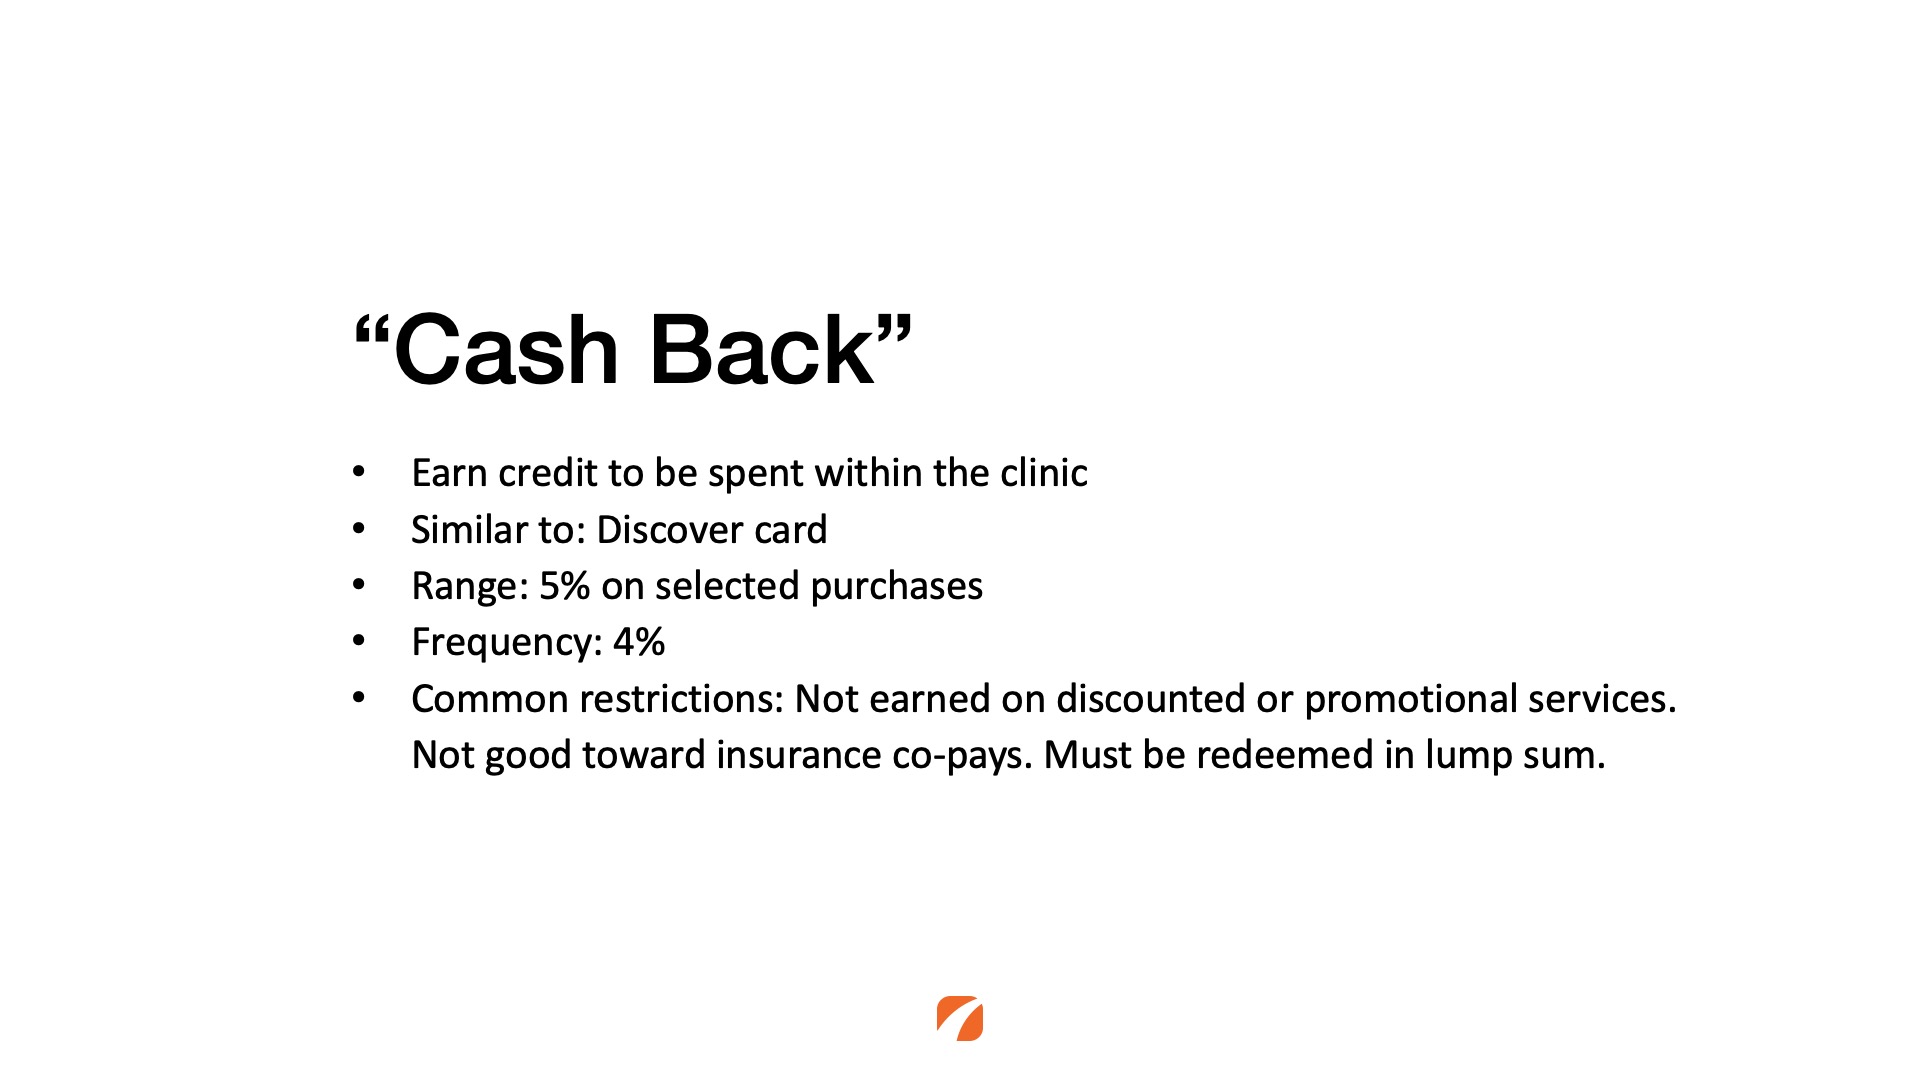 Cash back rewards program model for medical practices. 